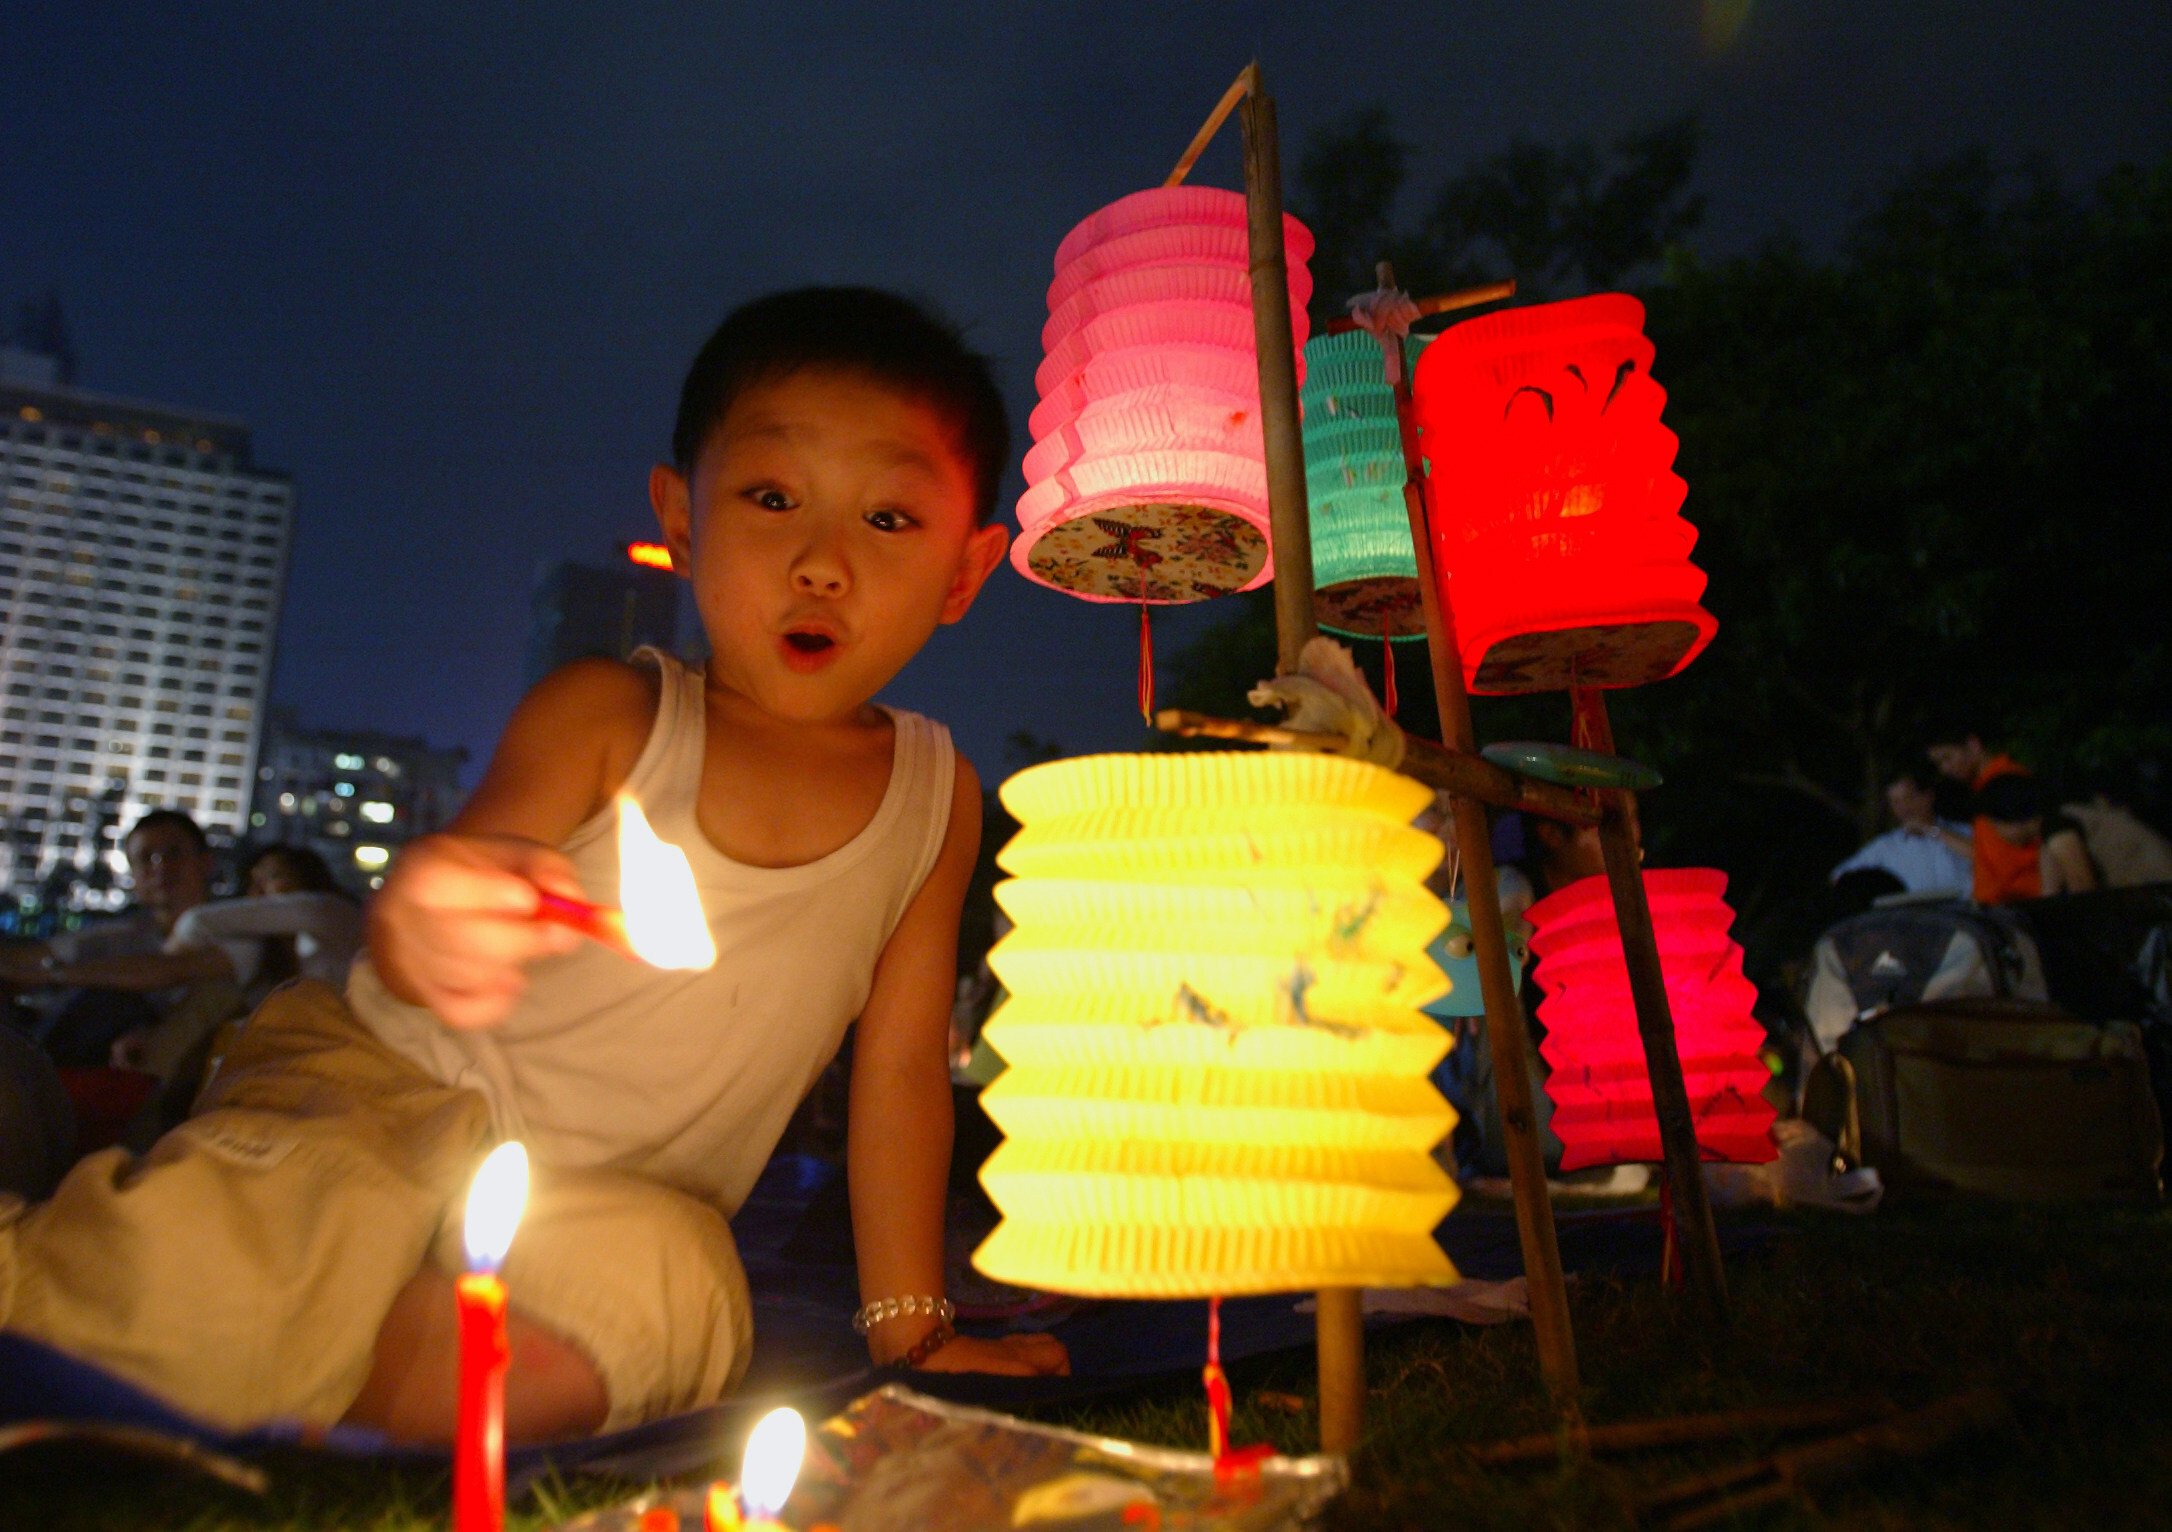 The Mid-Autumn Lantern Festival